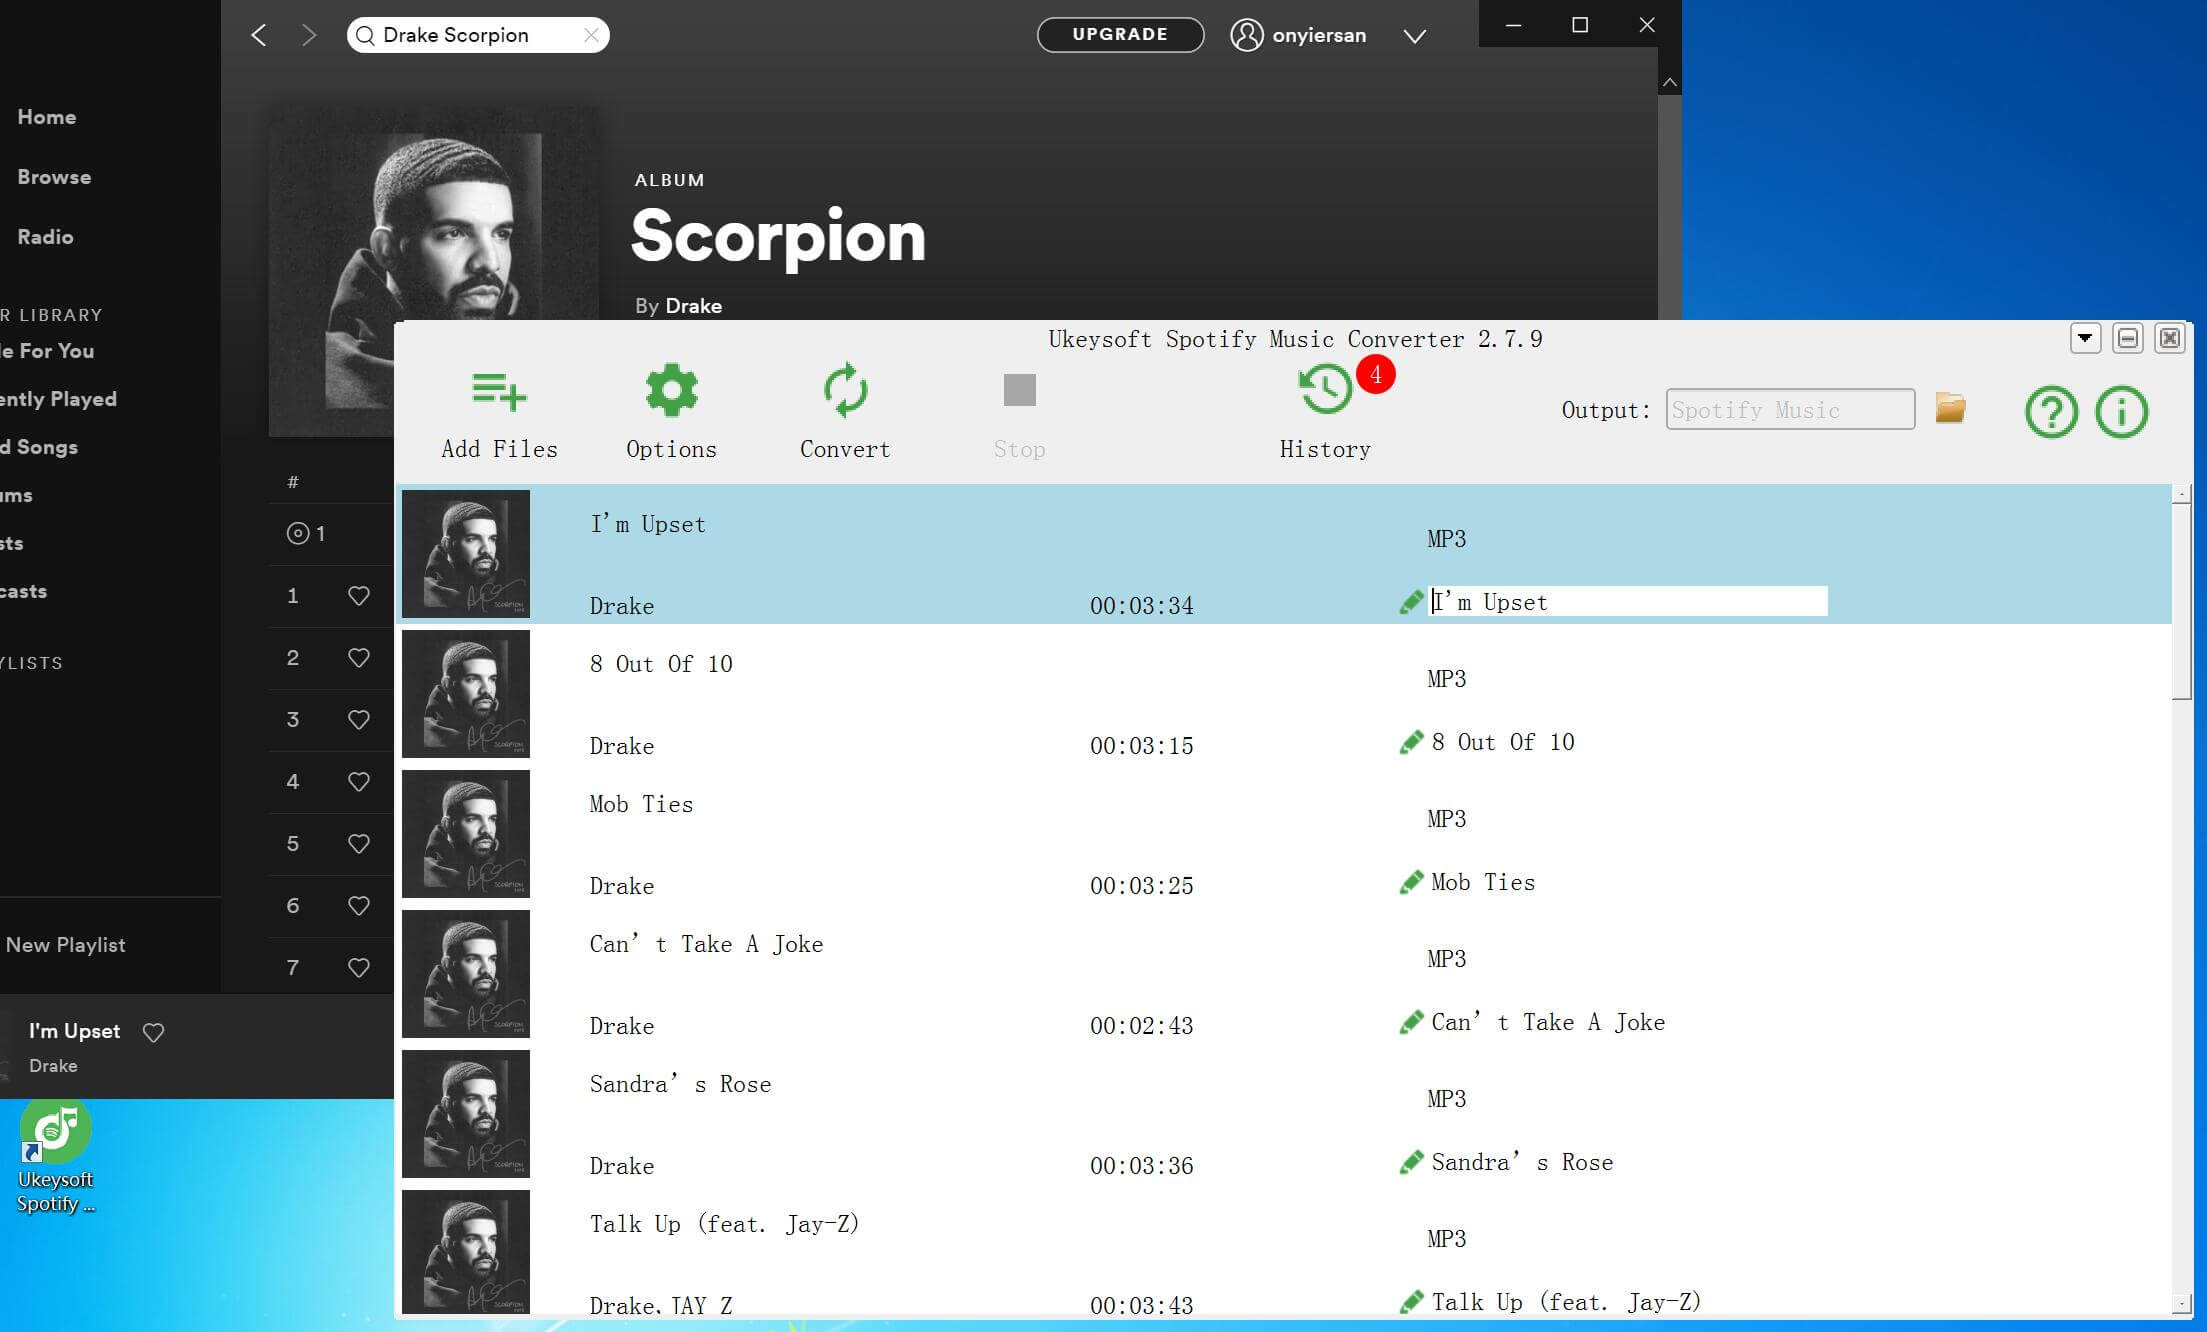 ดาวน์โหลดอัลบั้ม Drake's Scorpion ฟรีจาก Spotify